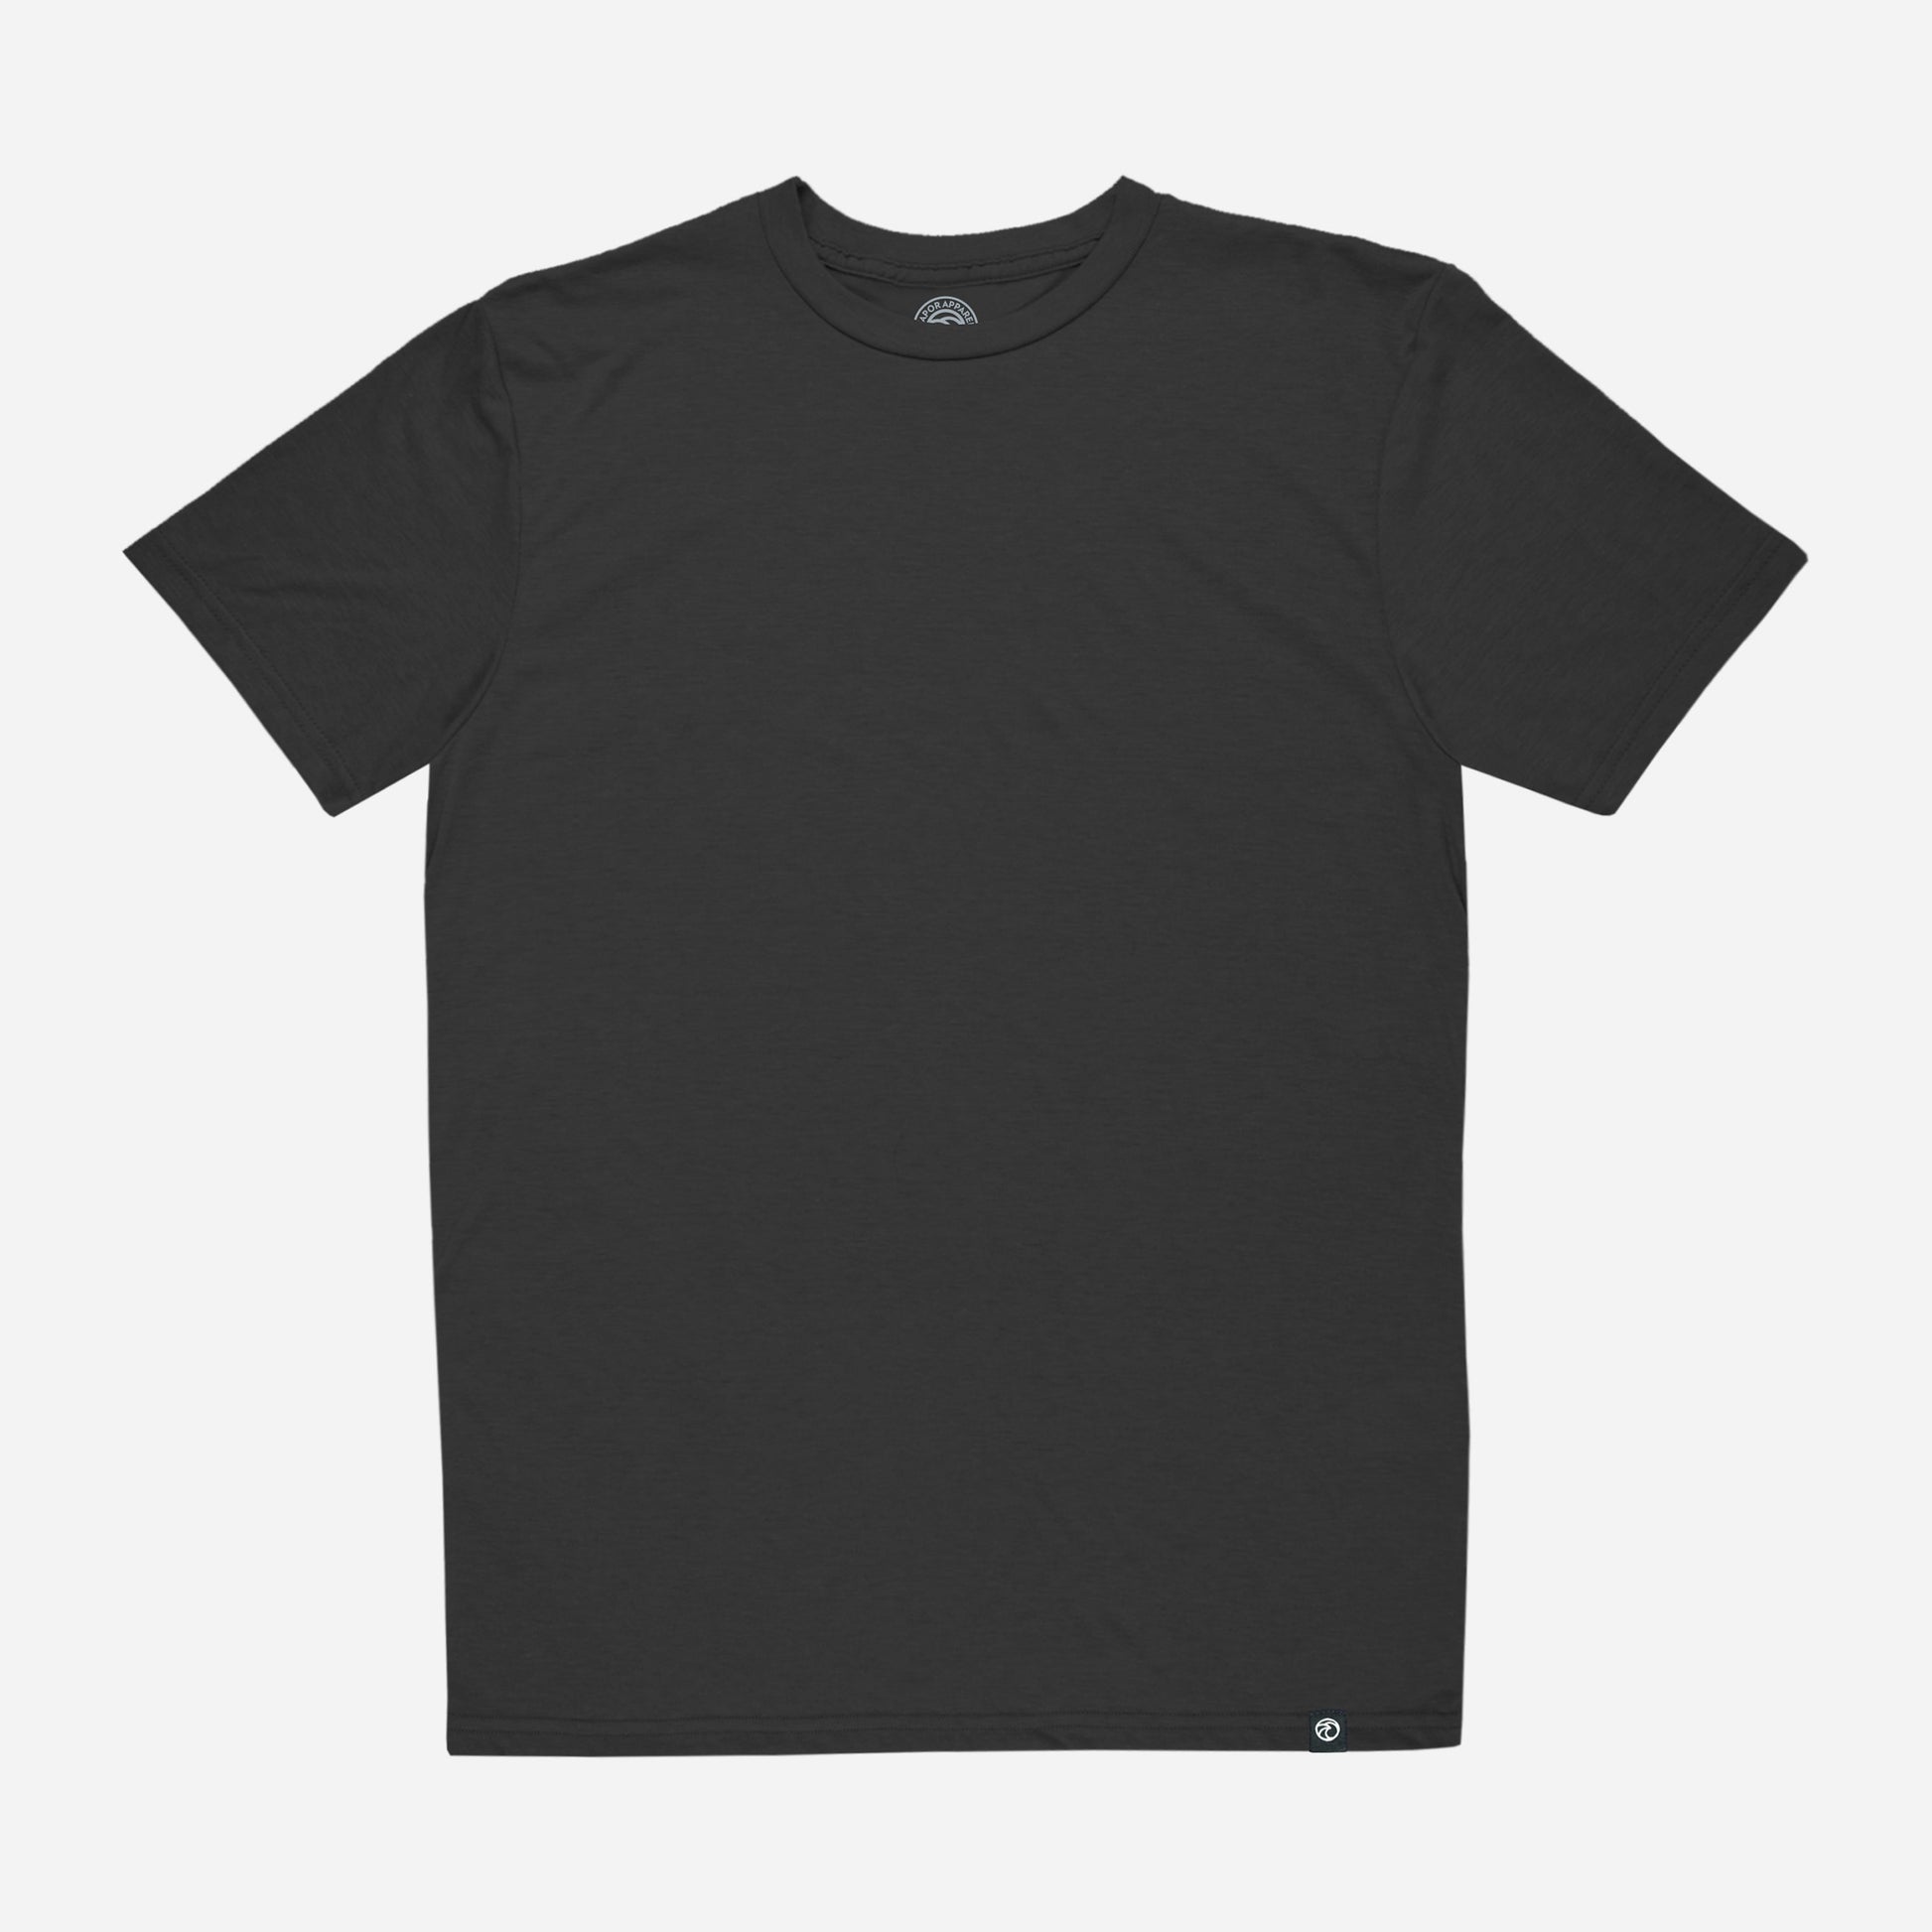 Vapor Apparel 200 Mile Short Sleeve T-Shirt, Lichen, XL